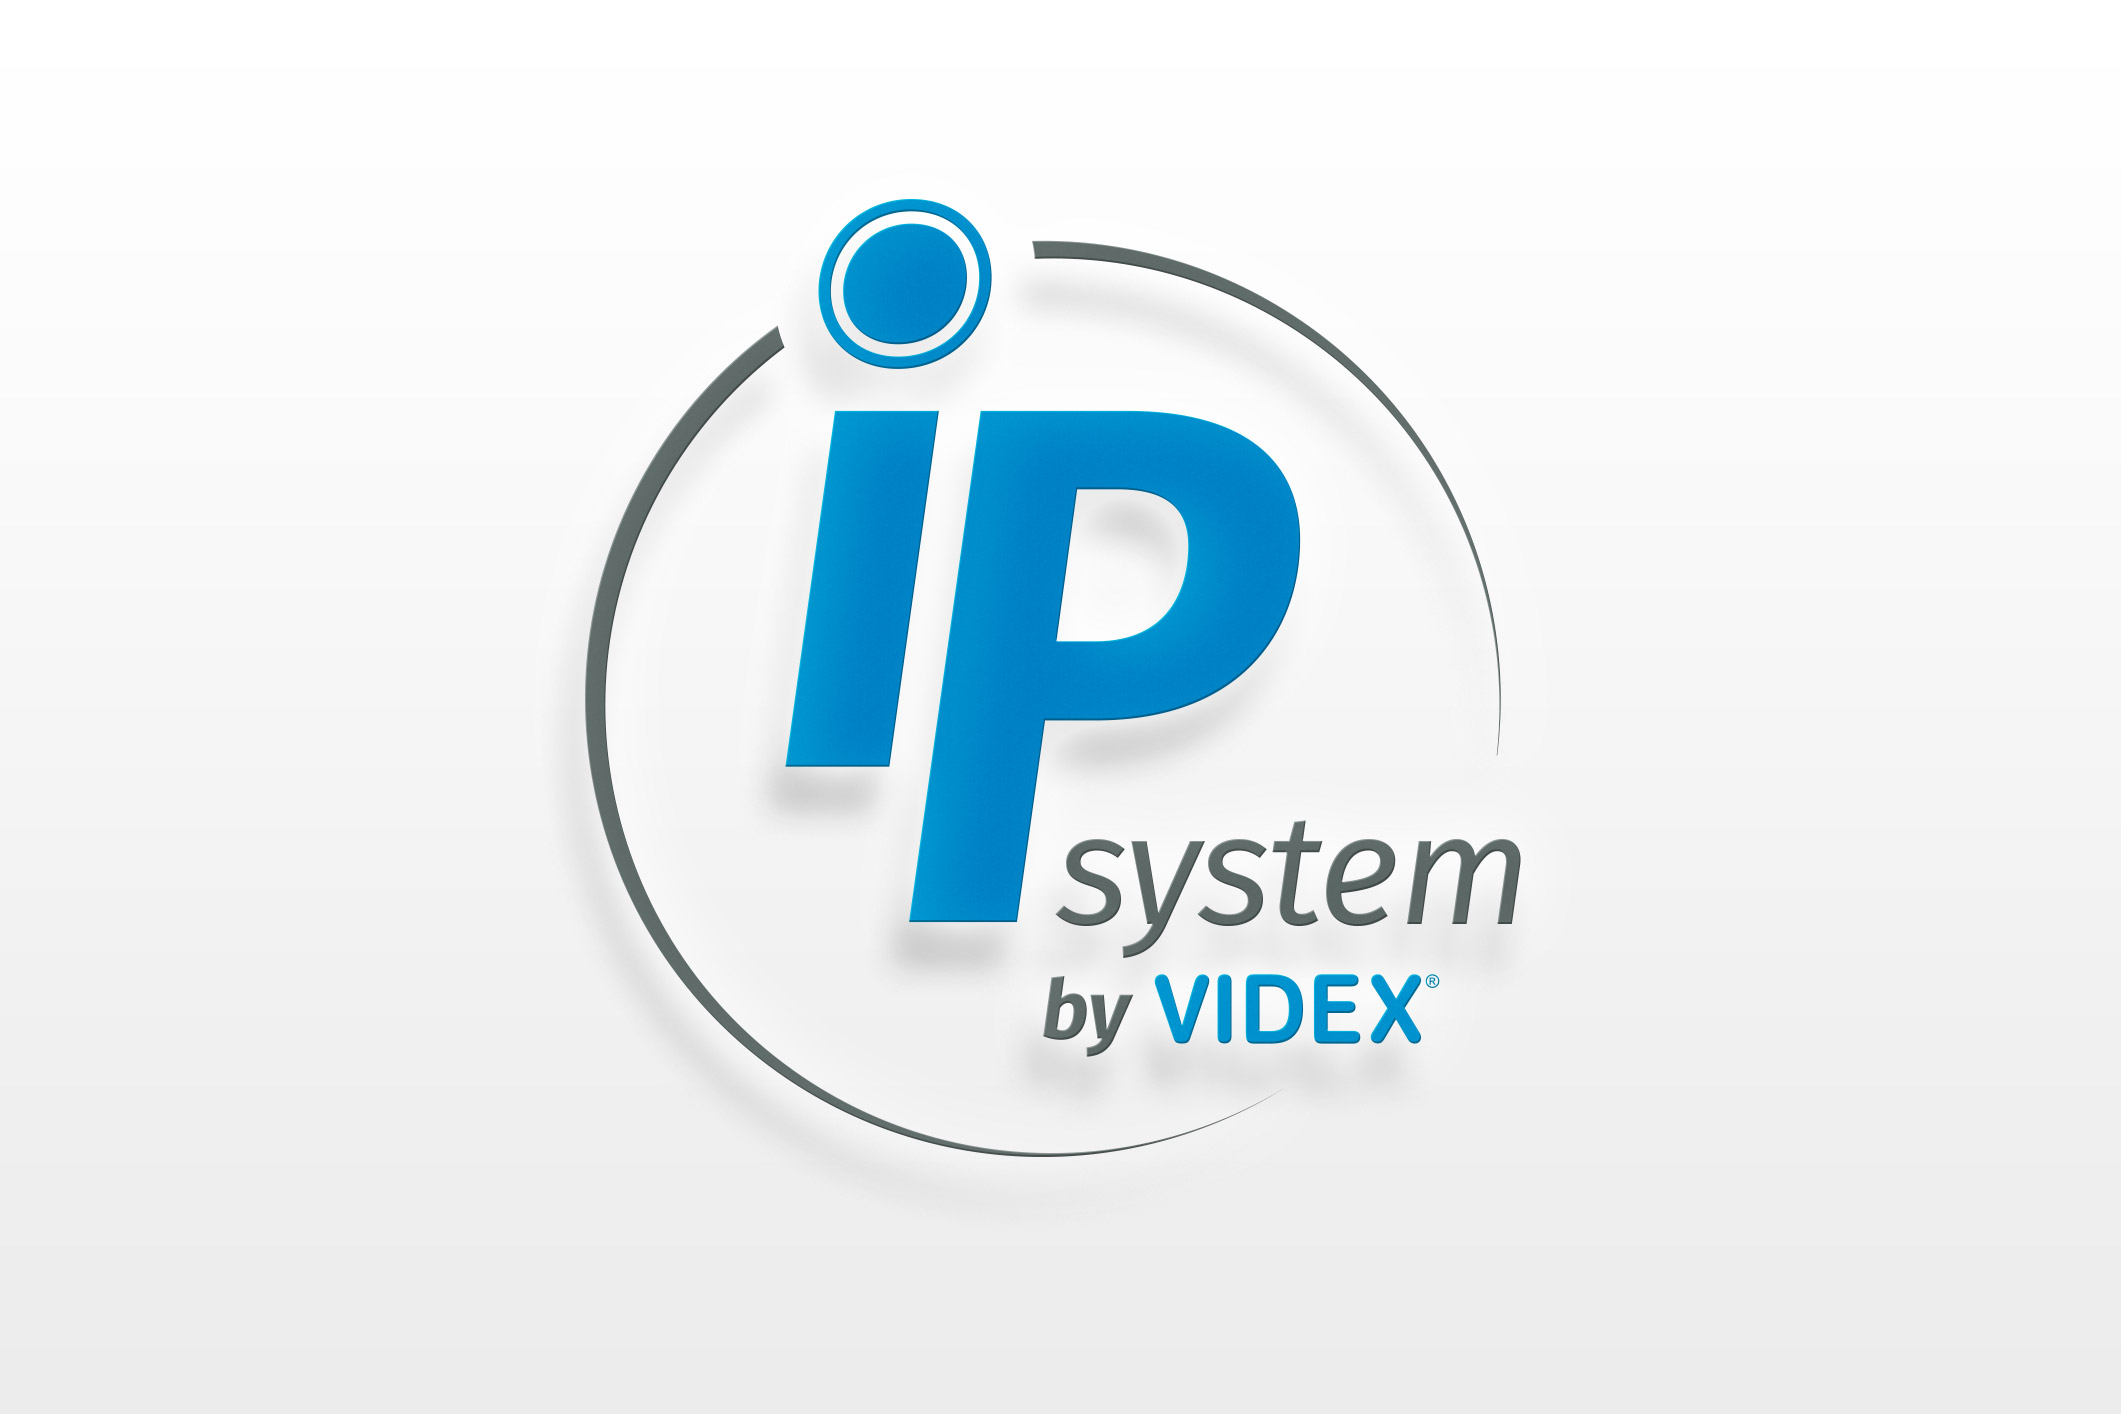 New Videx IP system